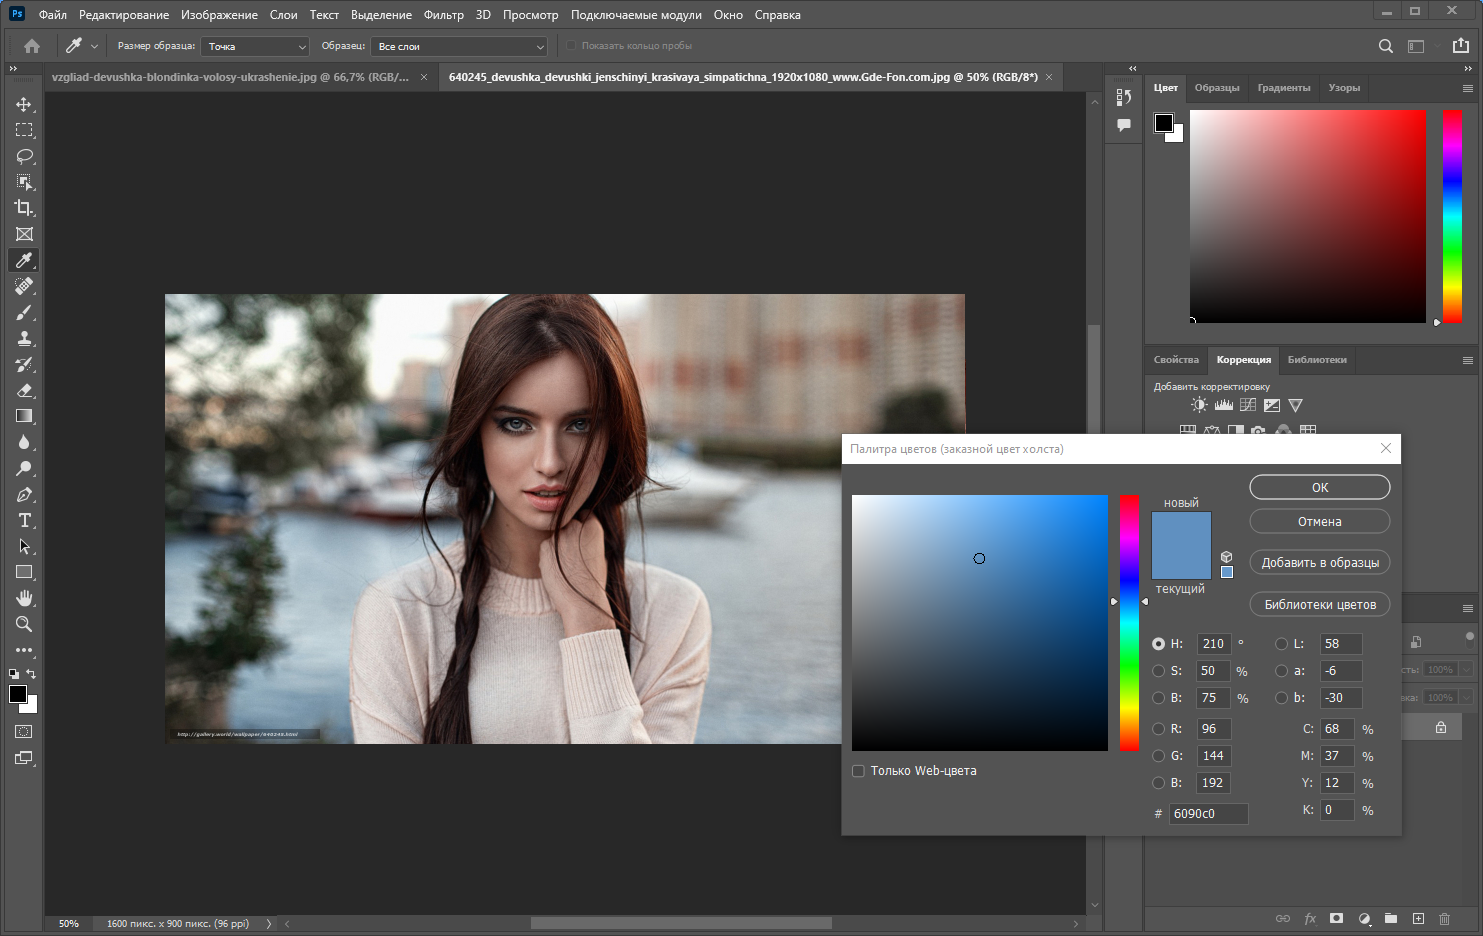 Adobe Photoshop 2022 23.2.1.303 RePack by KpoJIuK [Multi/Ru]